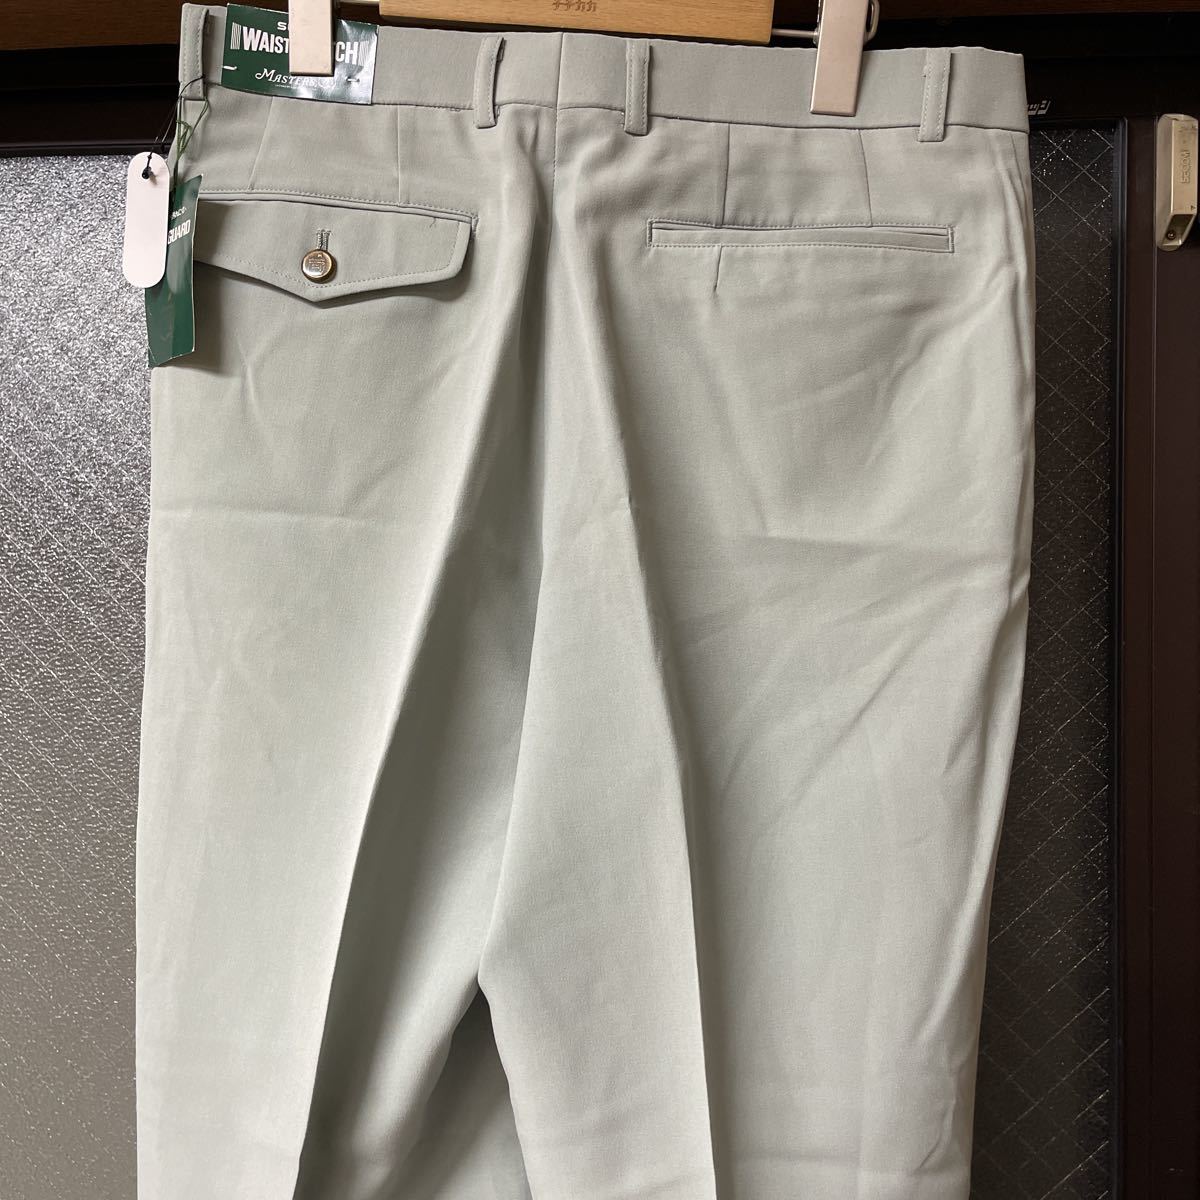 MASTERS マスターズ スラックス パンツ 未使用 メンズ ボトム ウエスト79 サイズ ゴルフ golf 日本製 MADE IN JAPAN フェニックス_画像3